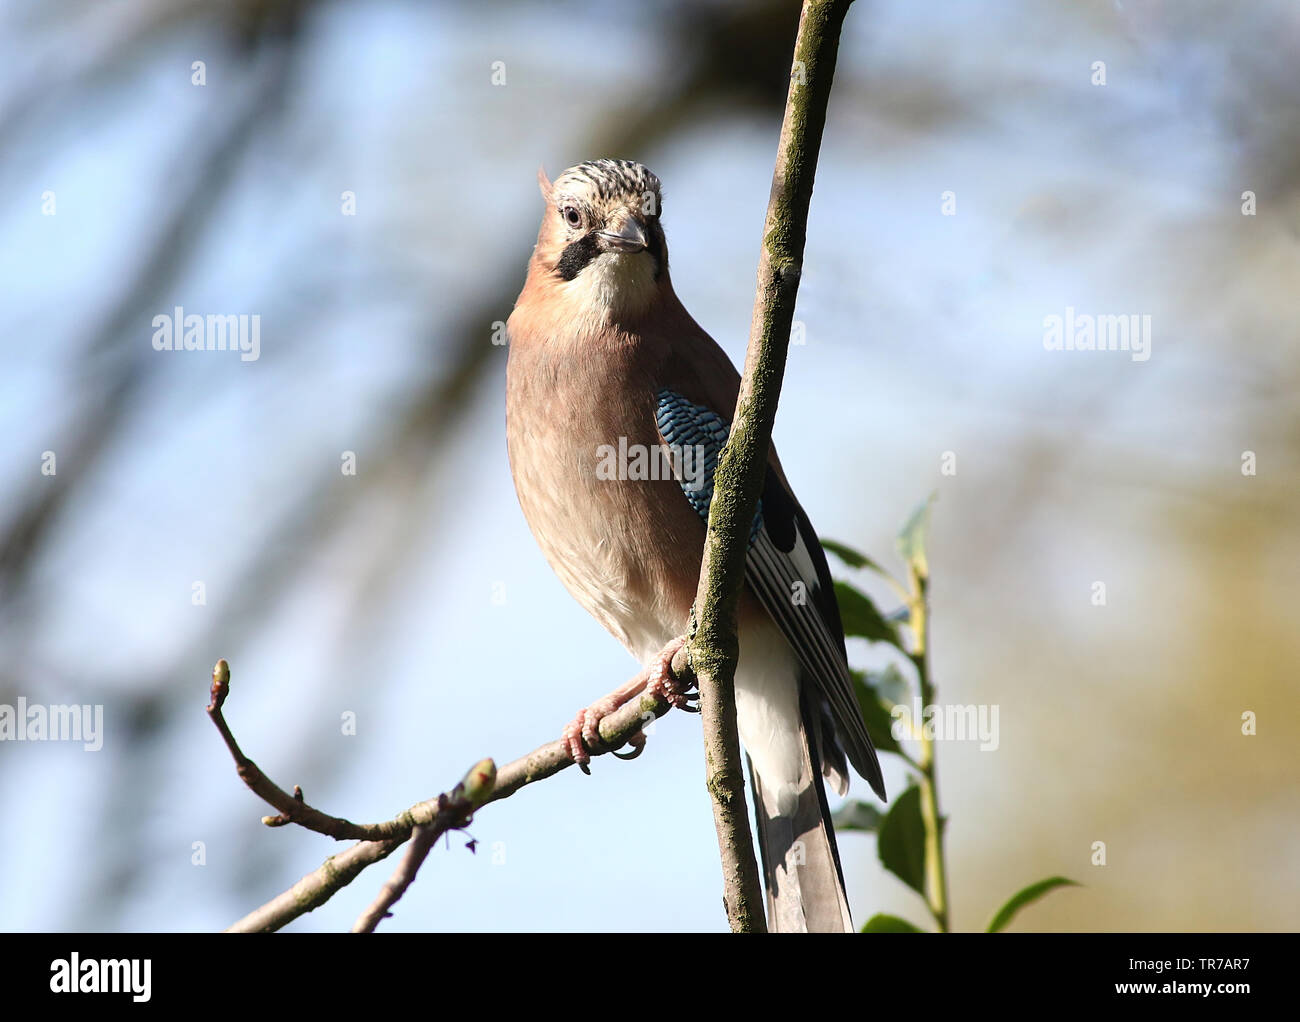 Jay euroasiático (Garrulus glandarius) posando en una rama y mirando a la cámara. Foto de stock